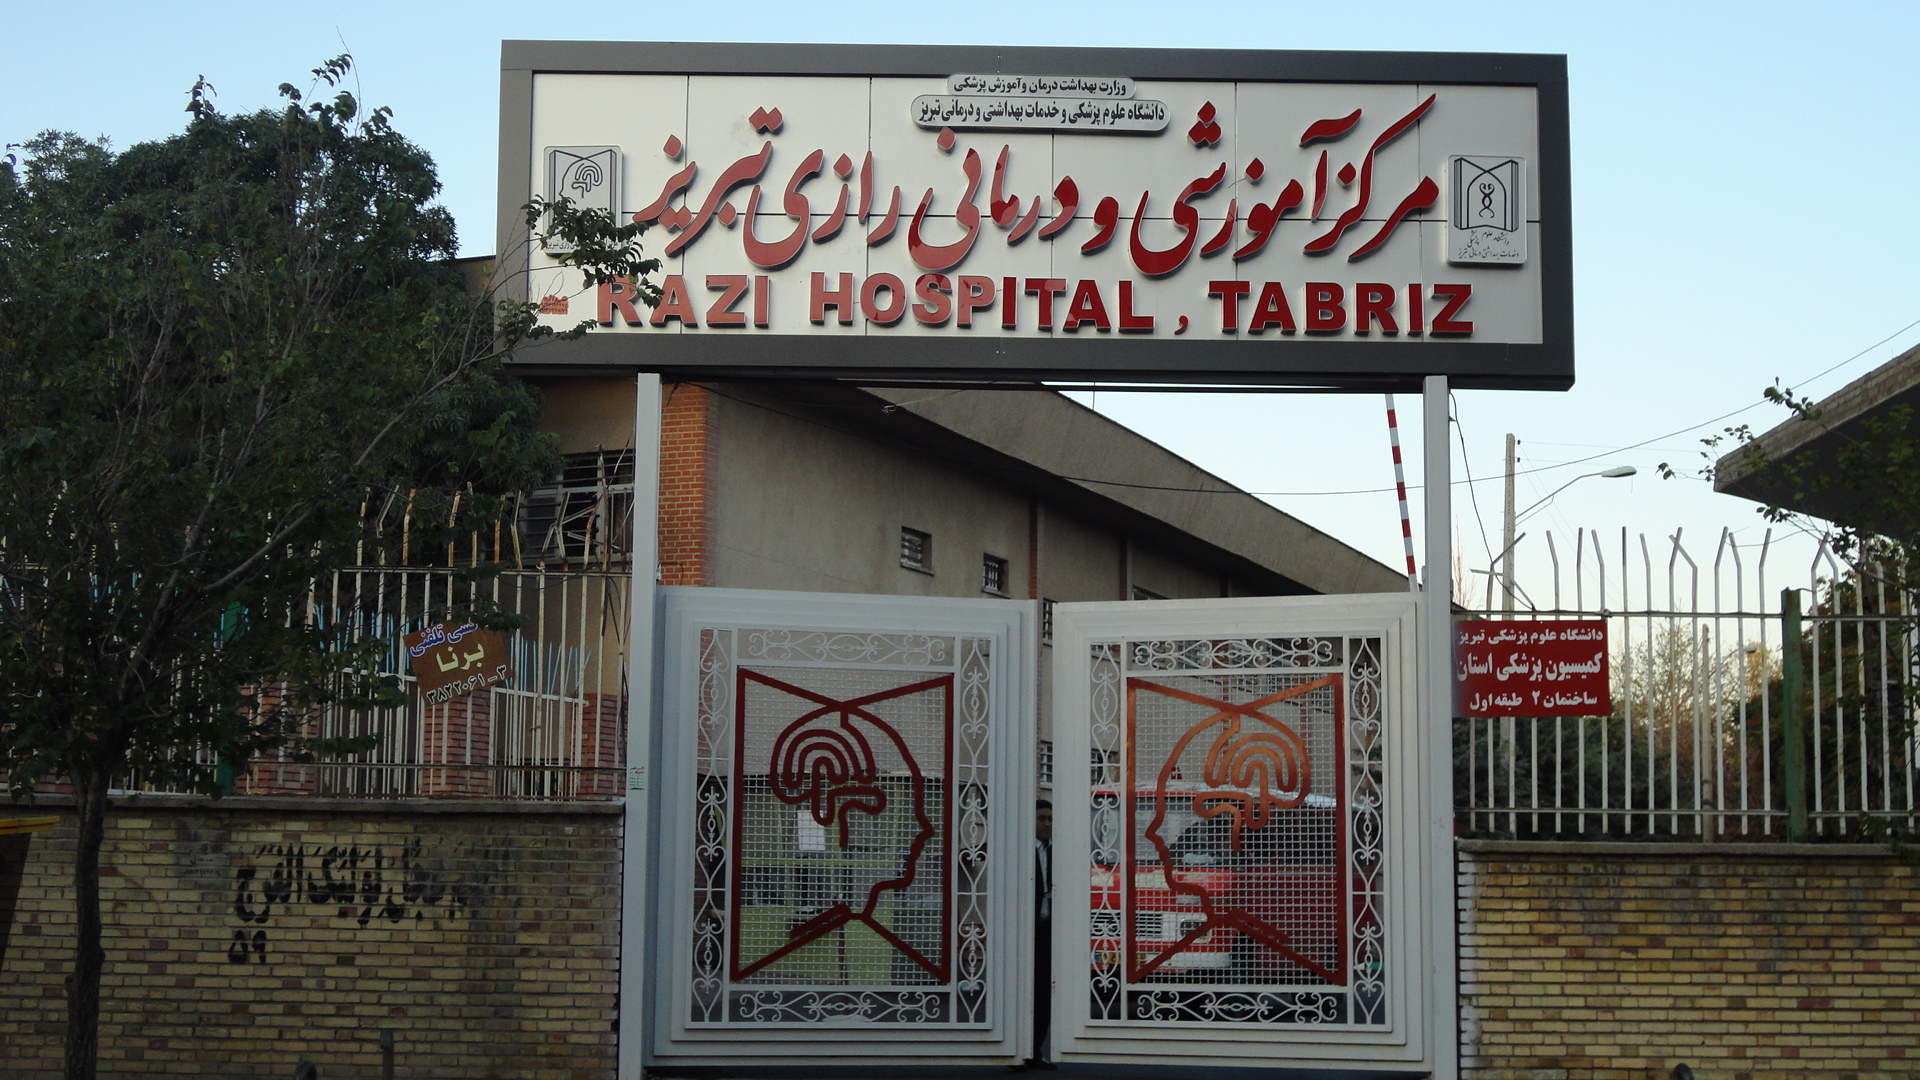 جزئیات حادثه سقوط بیمار خانم ۳۰ ساله از ساختمان بیمارستان رازی تبریز